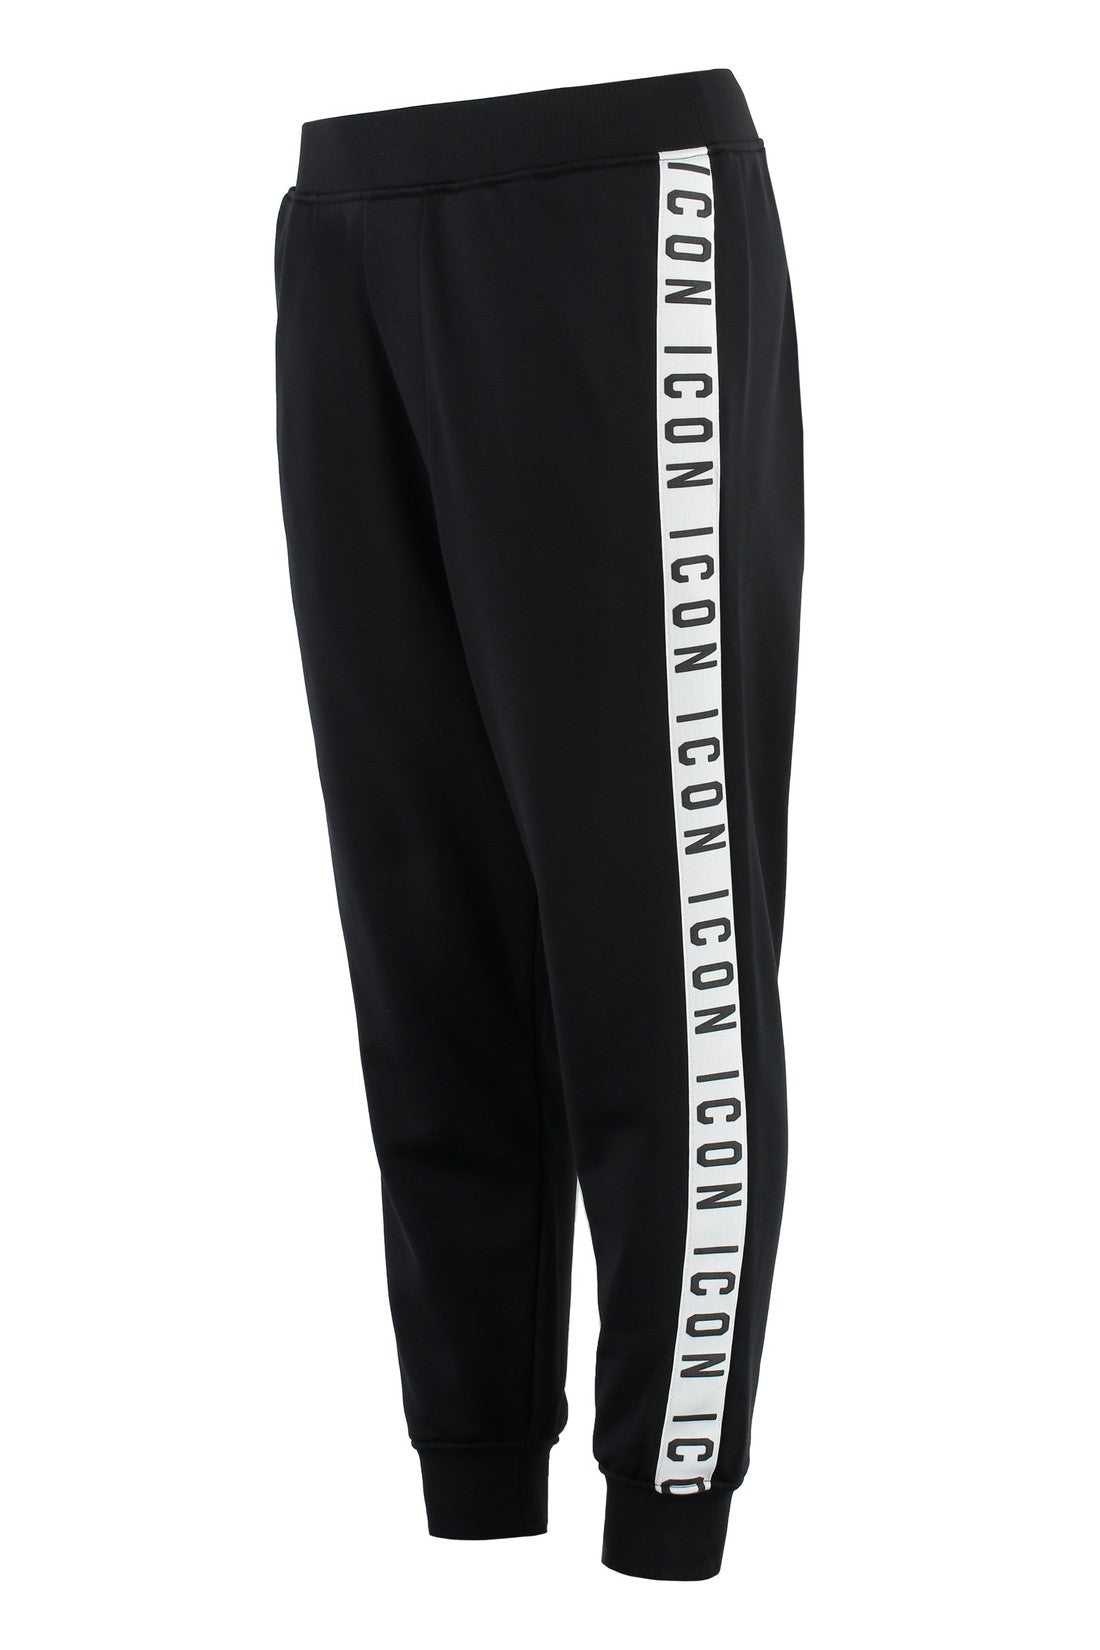 Dsquared2-OUTLET-SALE-Dan cotton blend jogging trousers-ARCHIVIST